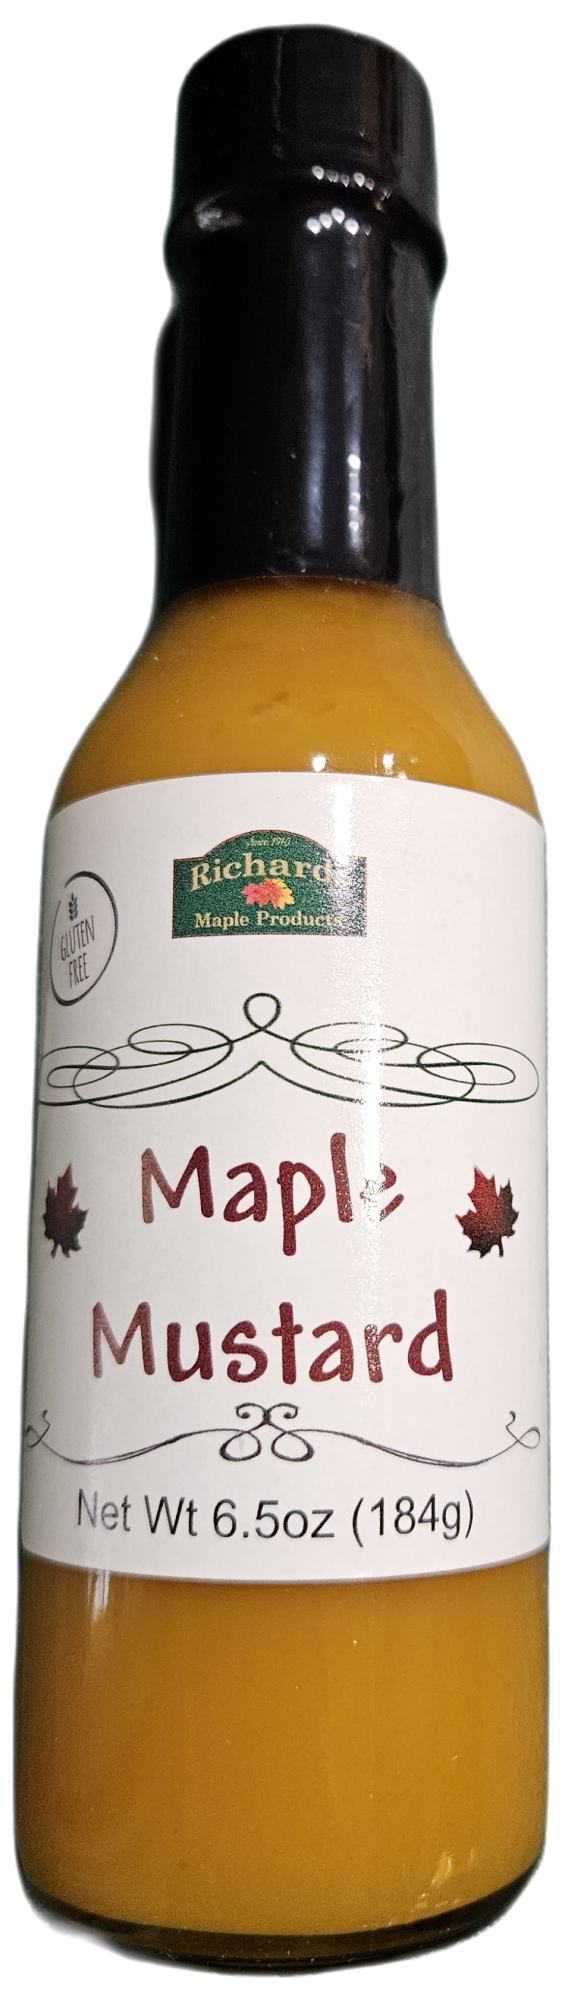 Maple Mustard